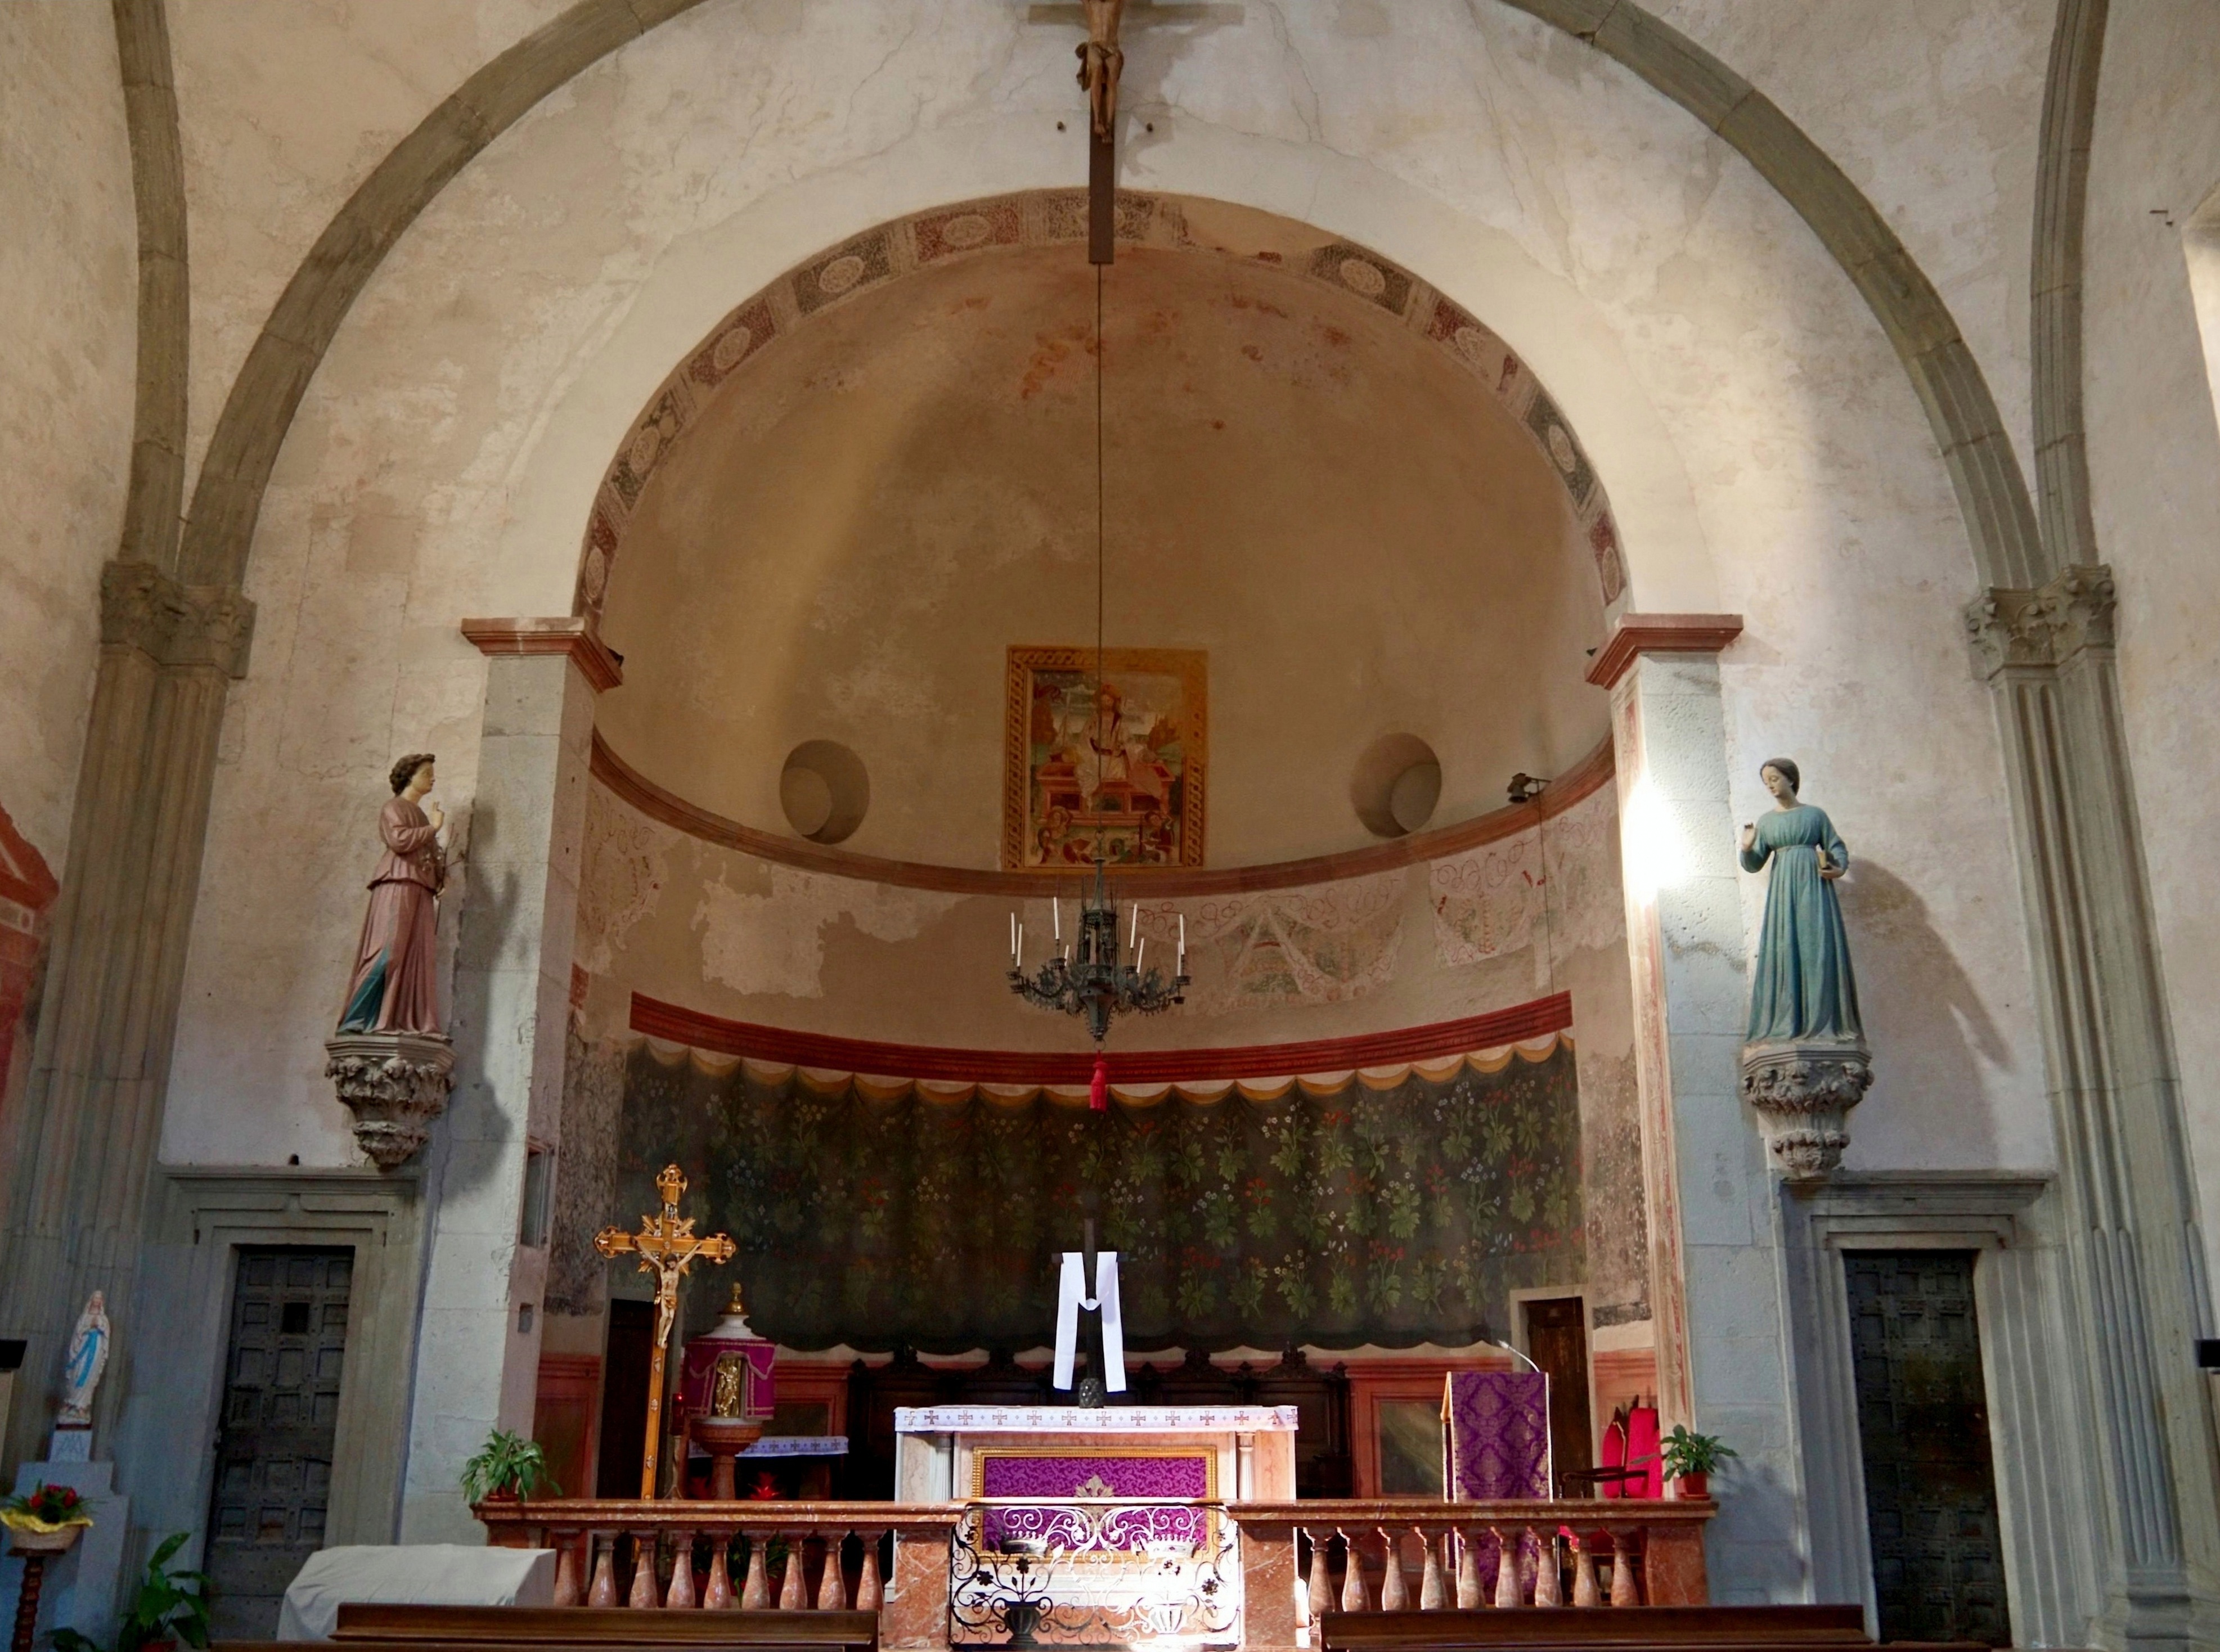 Castiglione Olona (Varese): Altare e abside della Chiesa del Santissimo corpo di Cristo - Castiglione Olona (Varese)